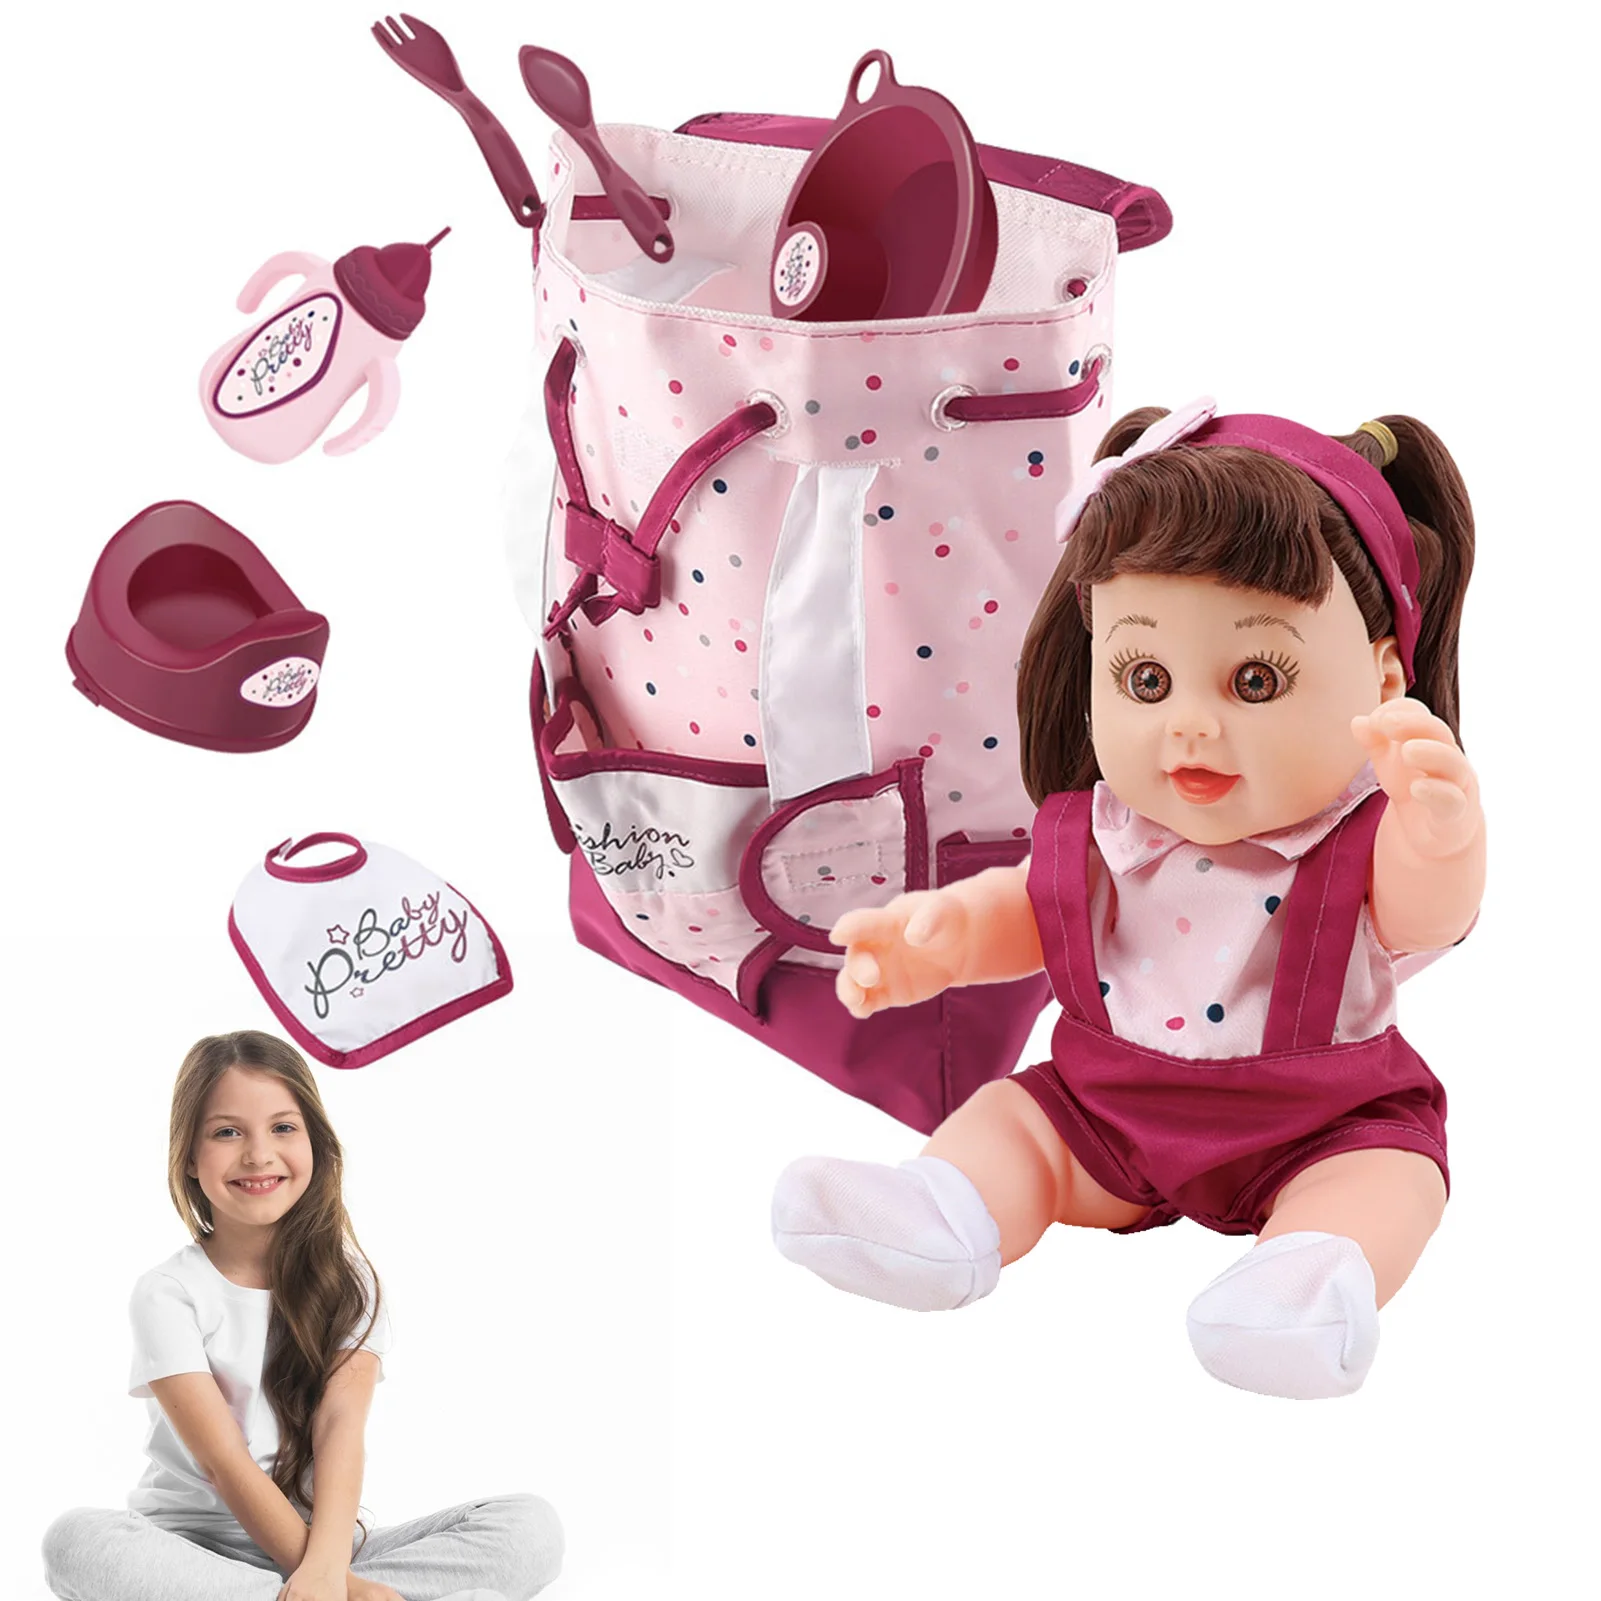 

Реалистичные куклы для новорожденных, детские куклы, которые выглядят очень мило, кукла для малышей, реально выглядящие детские куклы, розовый наряд с аксессуарами